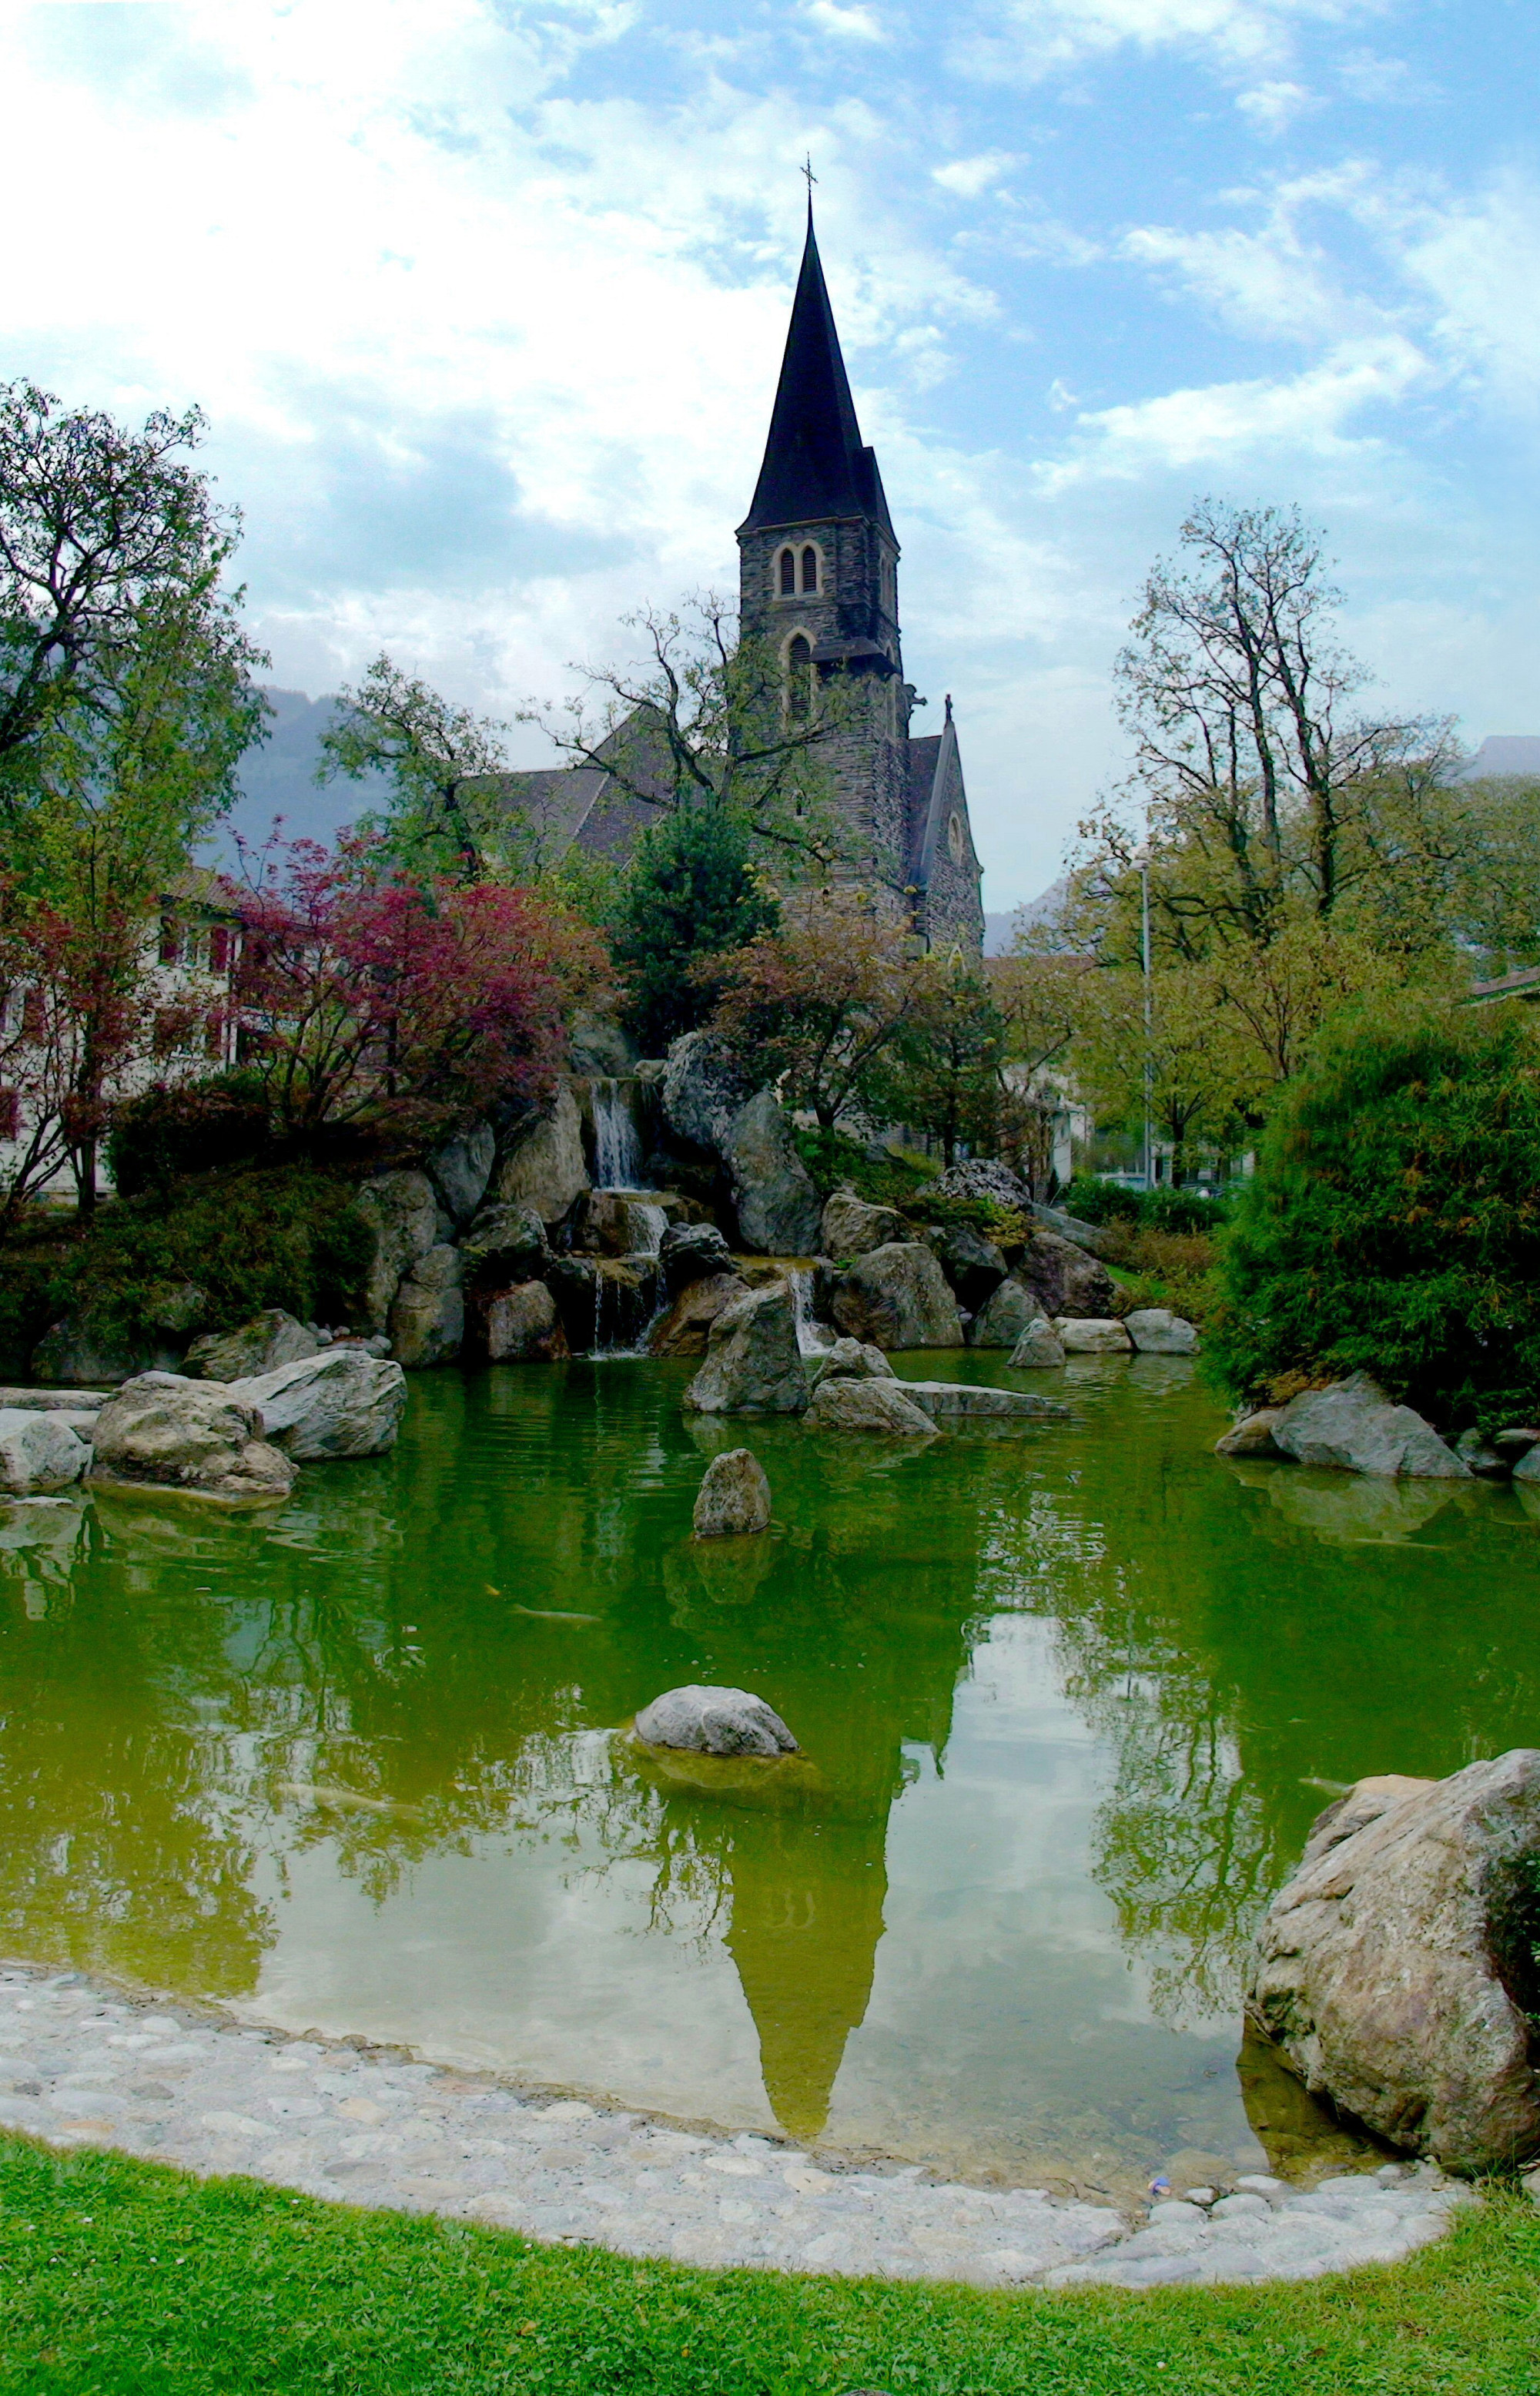 Сад дружбы — первый японский сад в Швейцарии, с камнями, прудом и цветными карпами кои. К саду примыкает Римско-католическая церковь Святого Духа (1906–1908).<br/>
